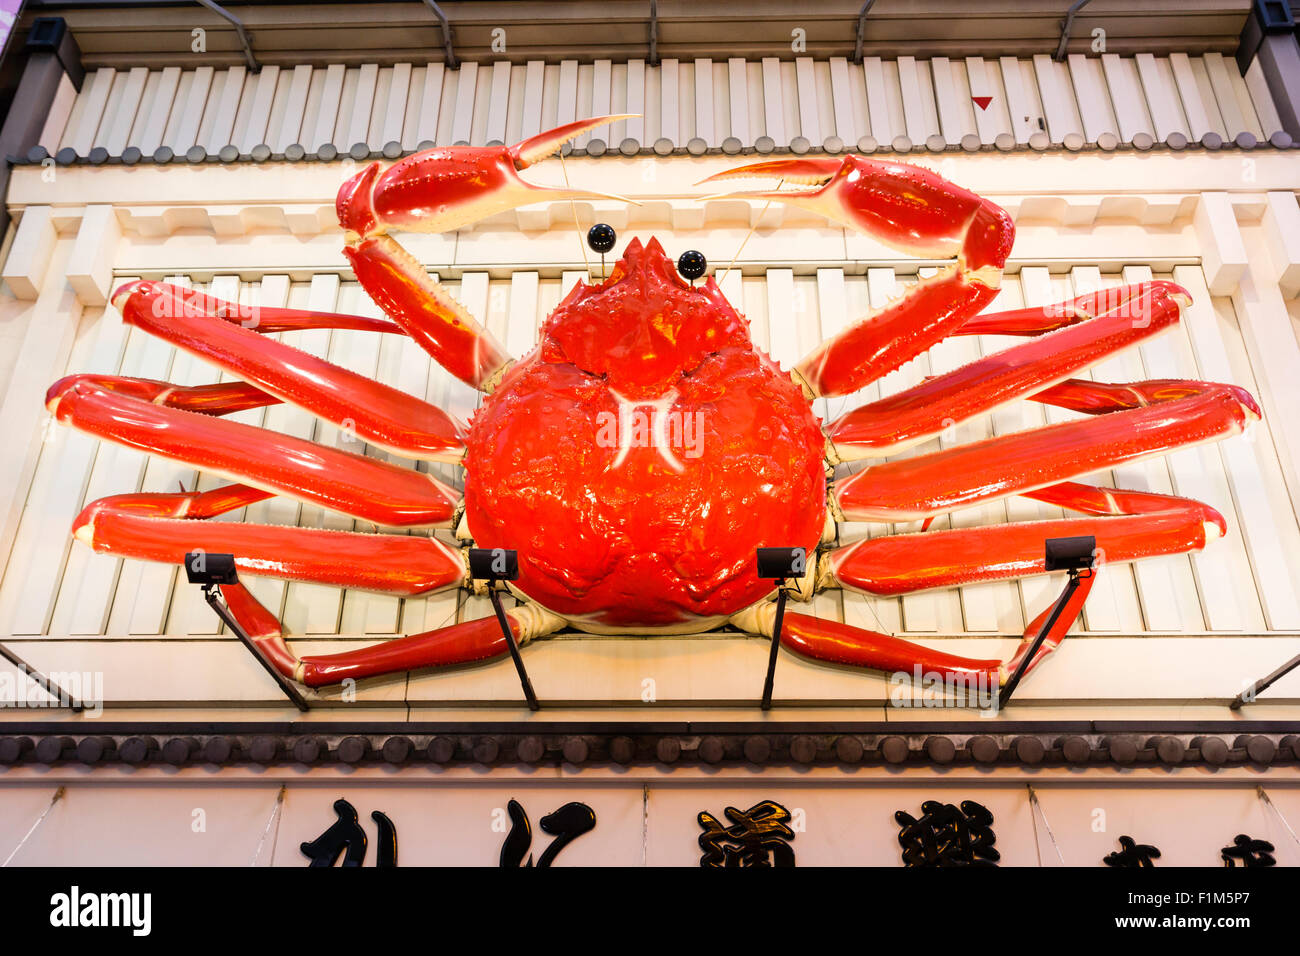 Osaka, Dotonbori. Exterior of famous crab restaurant, Kani Doraku, with giant mechanical orange crab above entrance. Night time, sign illuminated. Stock Photo